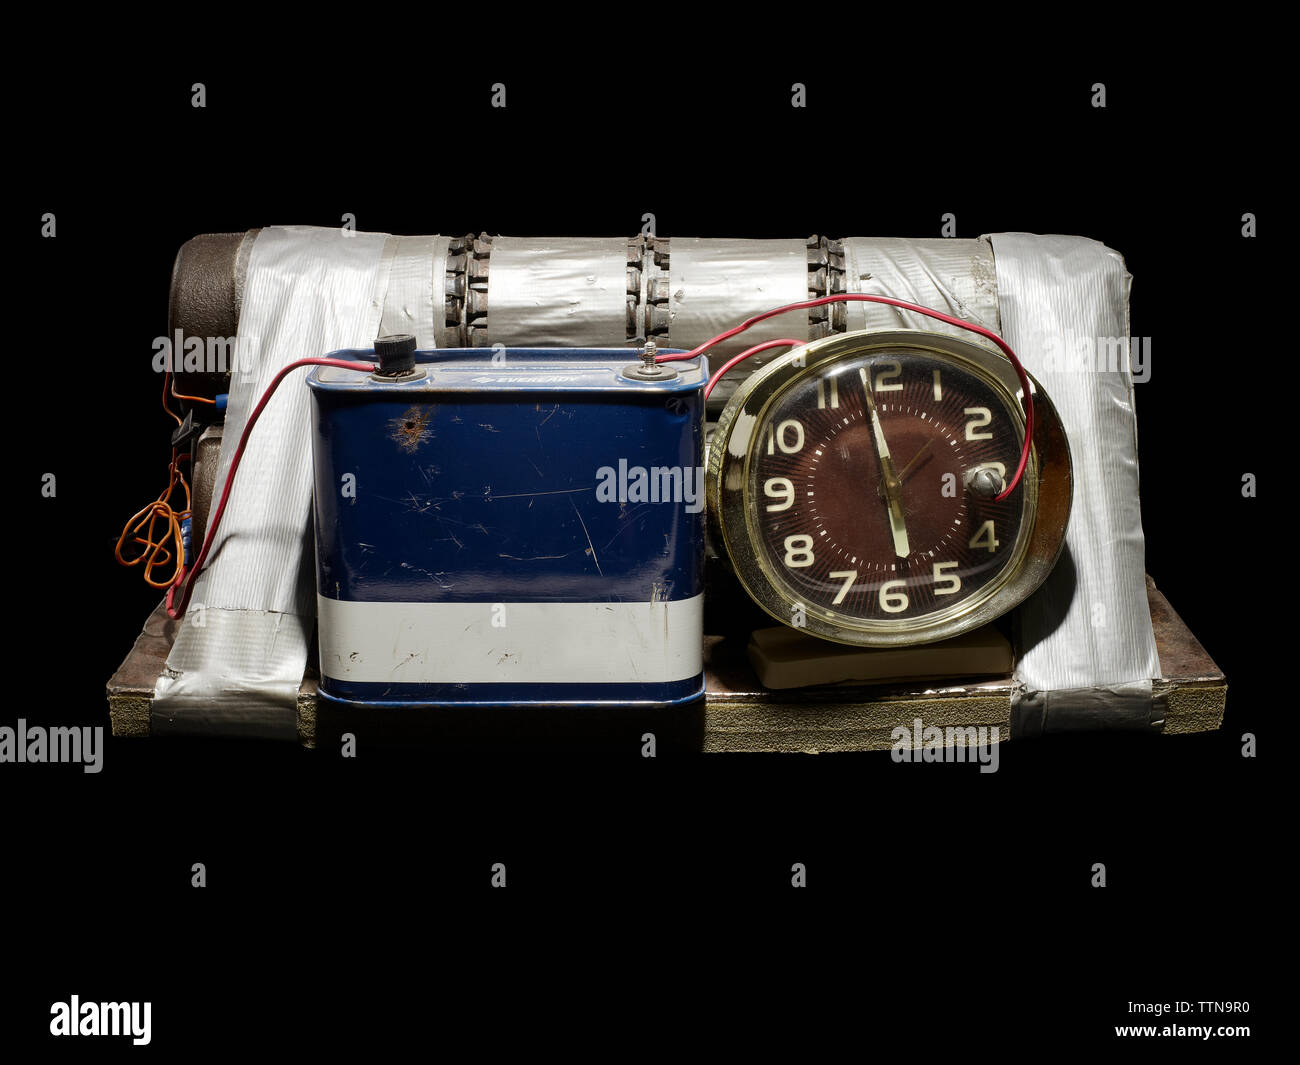 Bomba de tiempo casera Fotografía de stock - Alamy